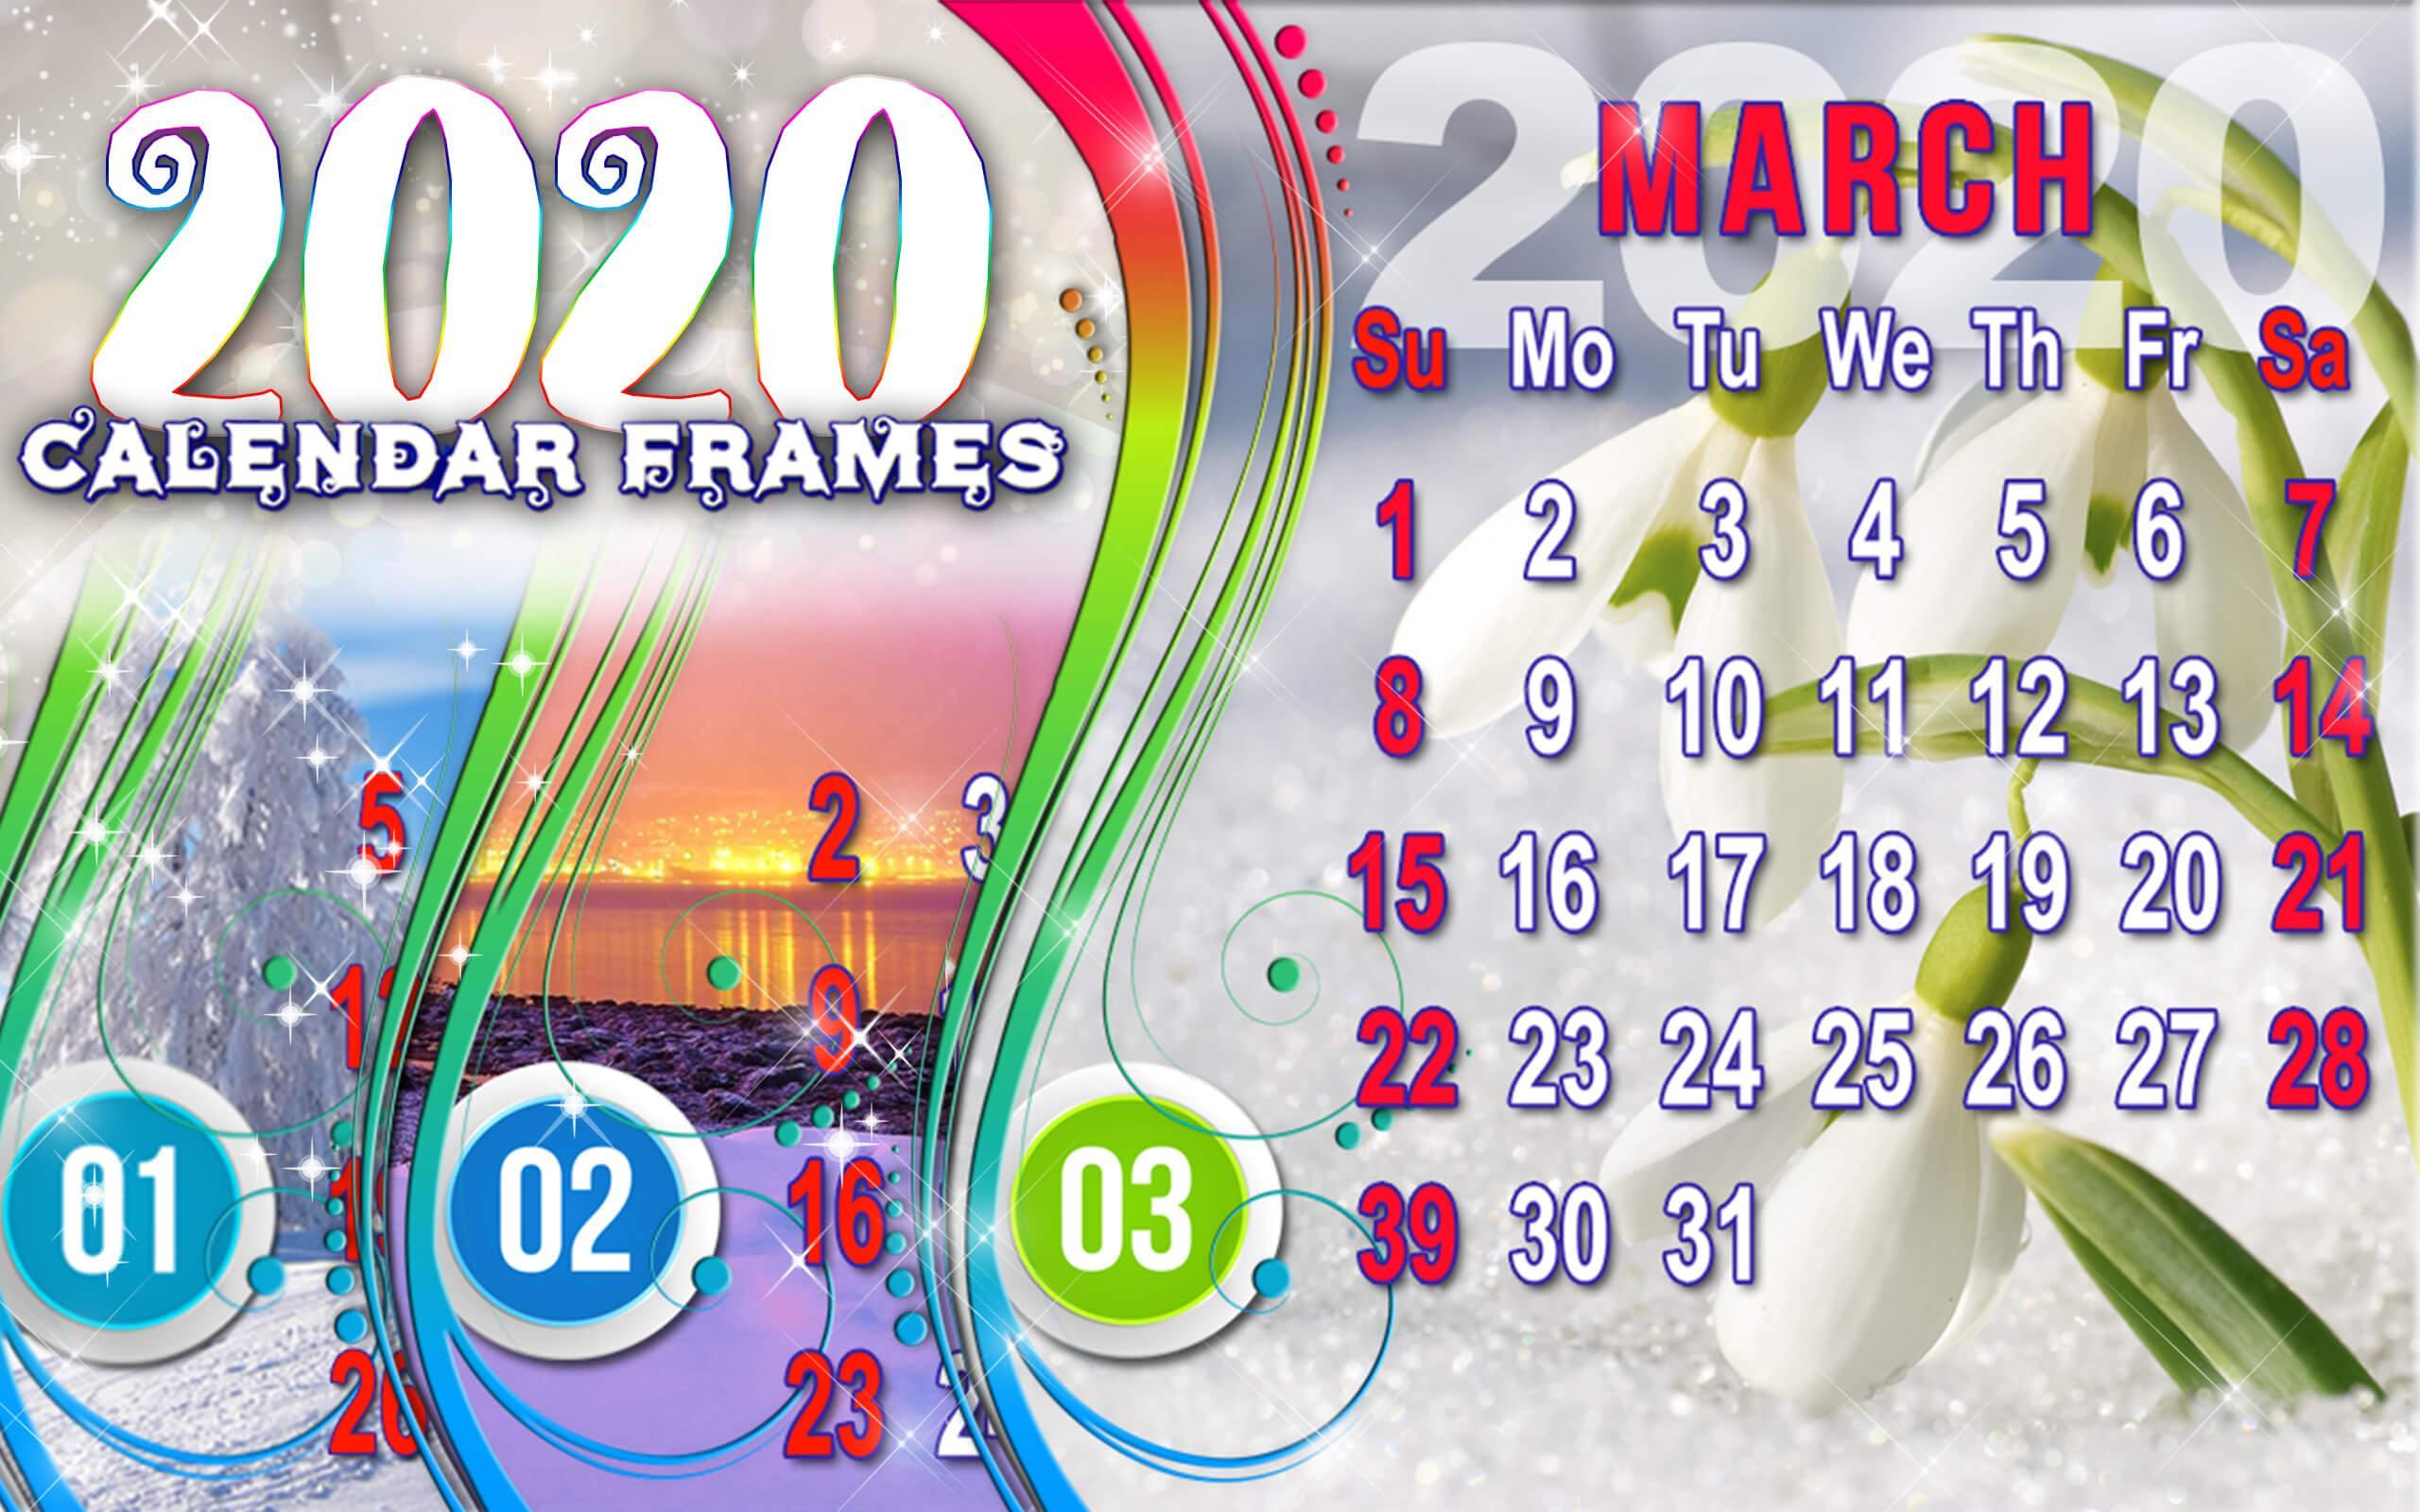 Bingkai Foto Kalender 2020 Gambar Editan For Android Apk Download